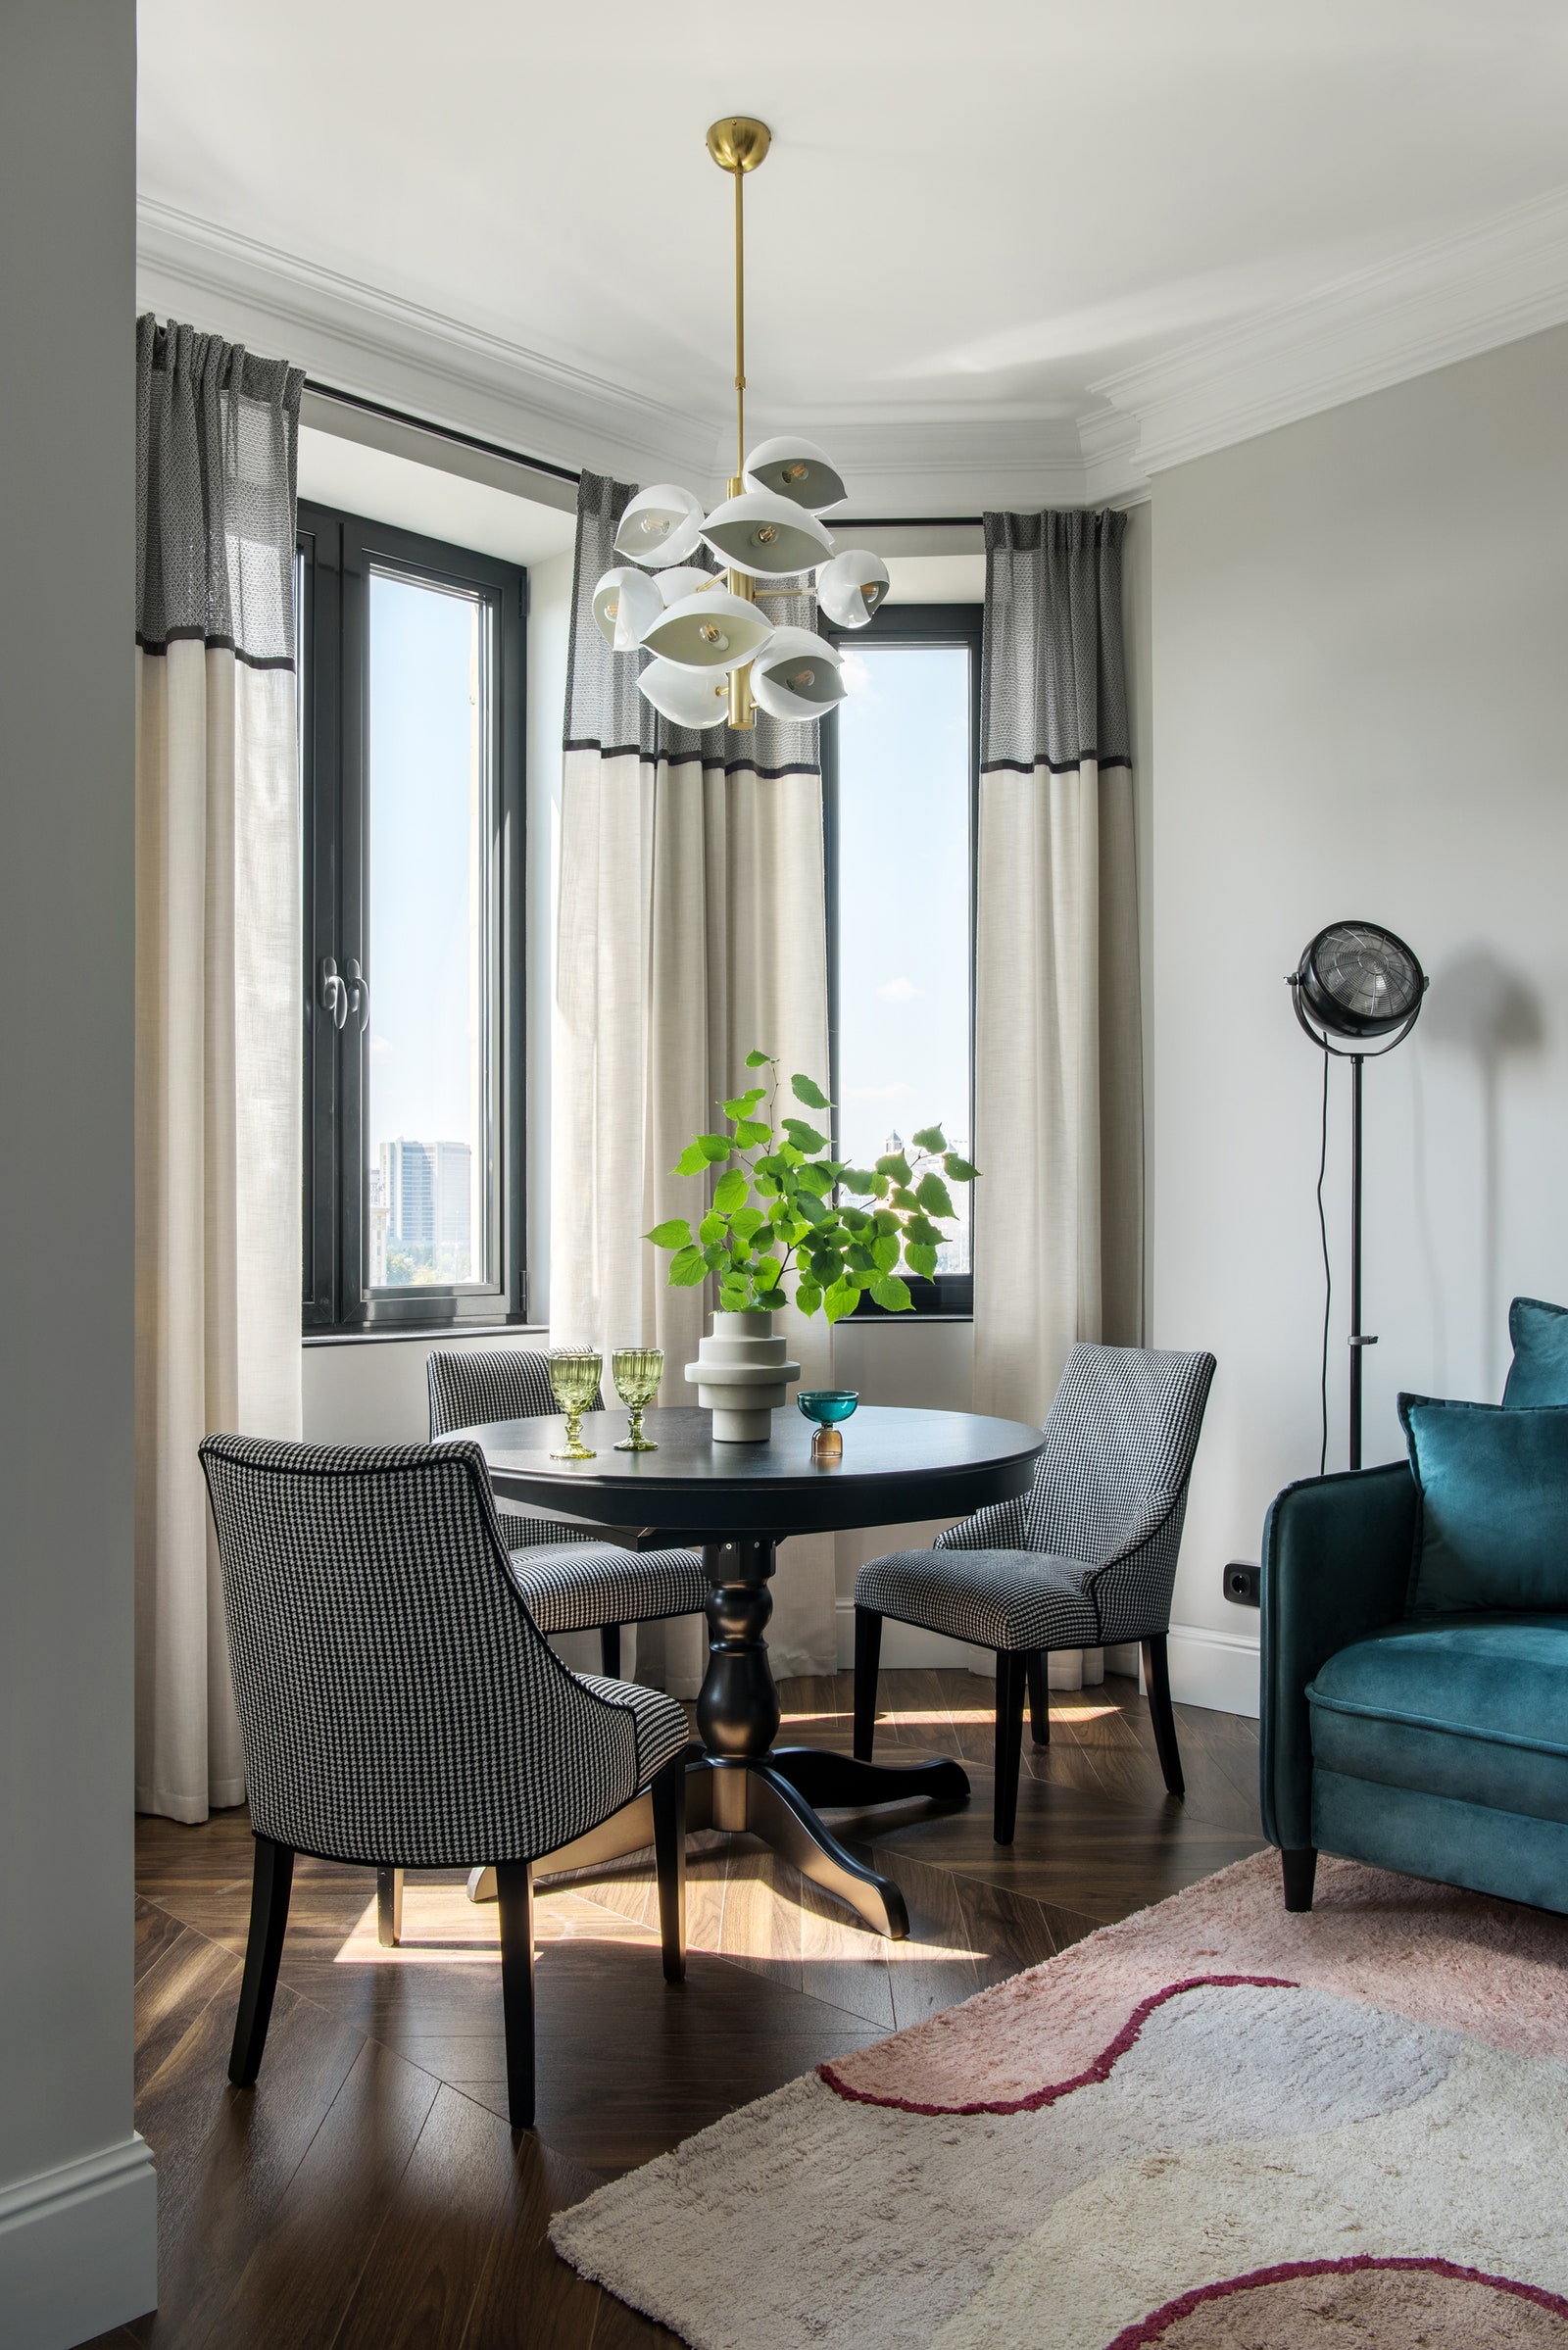 Столовая группа. Обеденный стол IKEA стулья сделаны на заказ Full House люстра над обеденным столом Cosmo шторы “Нью...